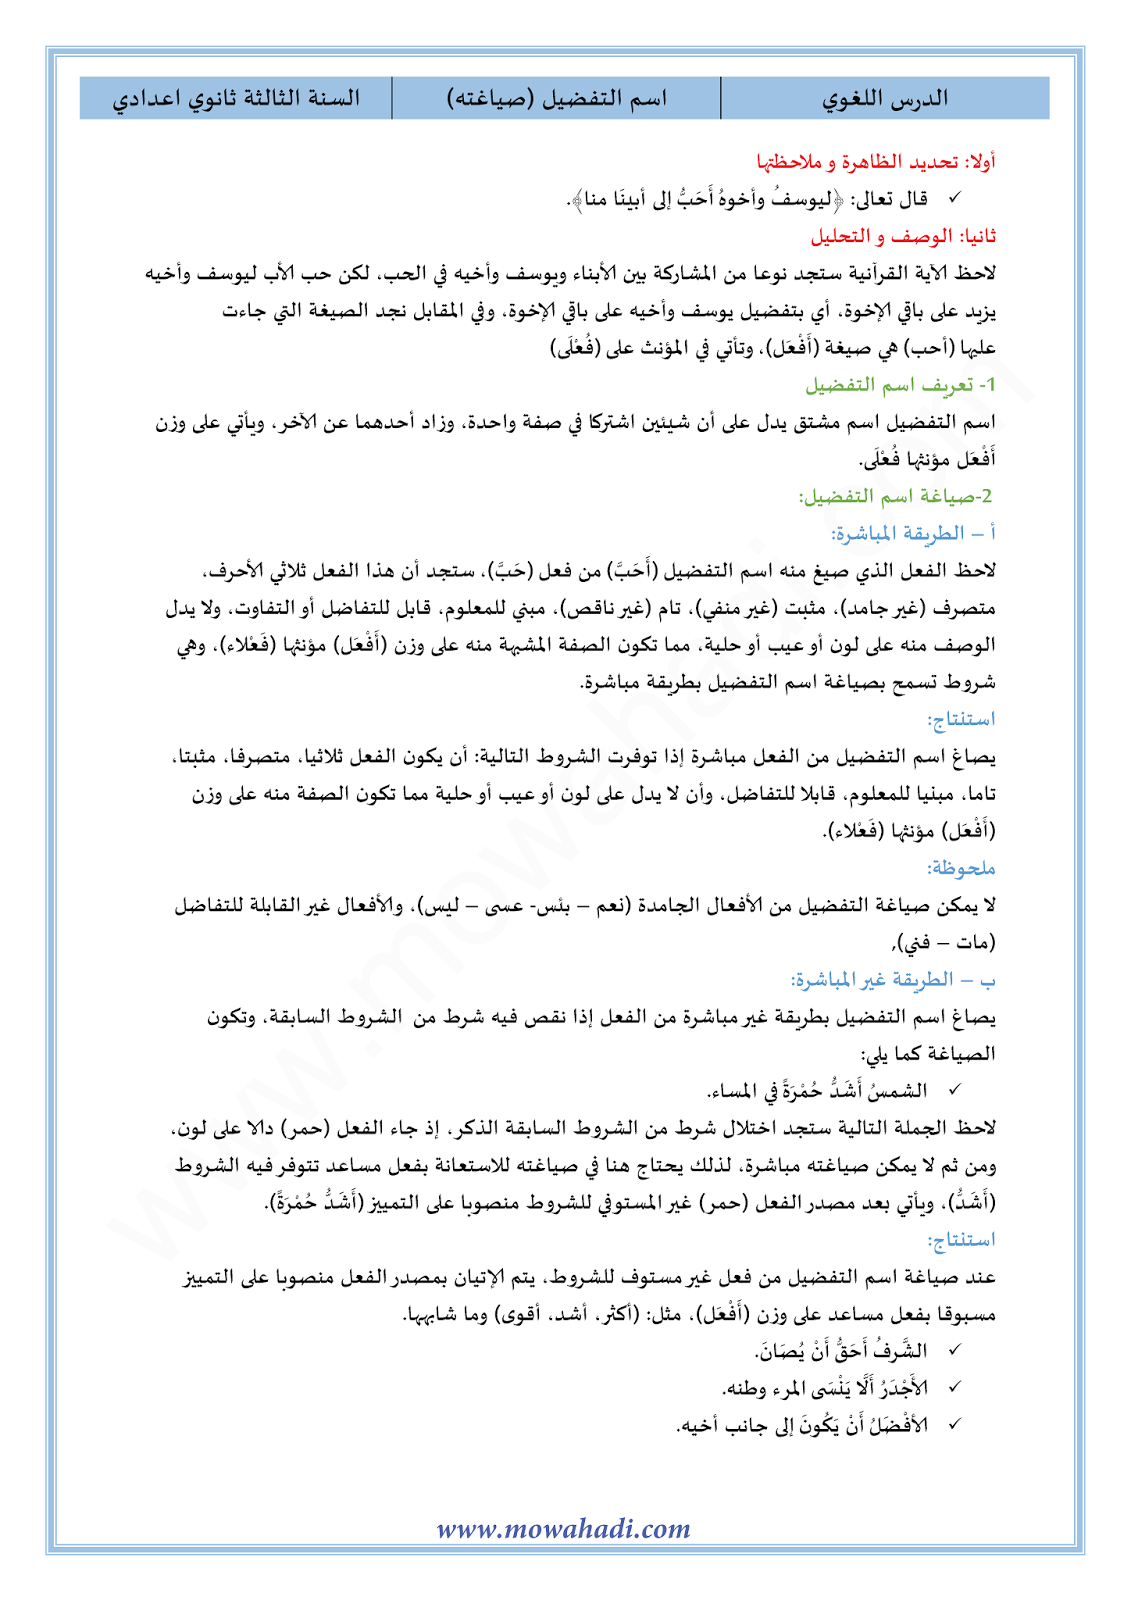 الدرس اللغوي اسم التفضيل للسنة الثالثة اعدادي في مادة اللغة العربية 8-cours-dars-loghawi3_001